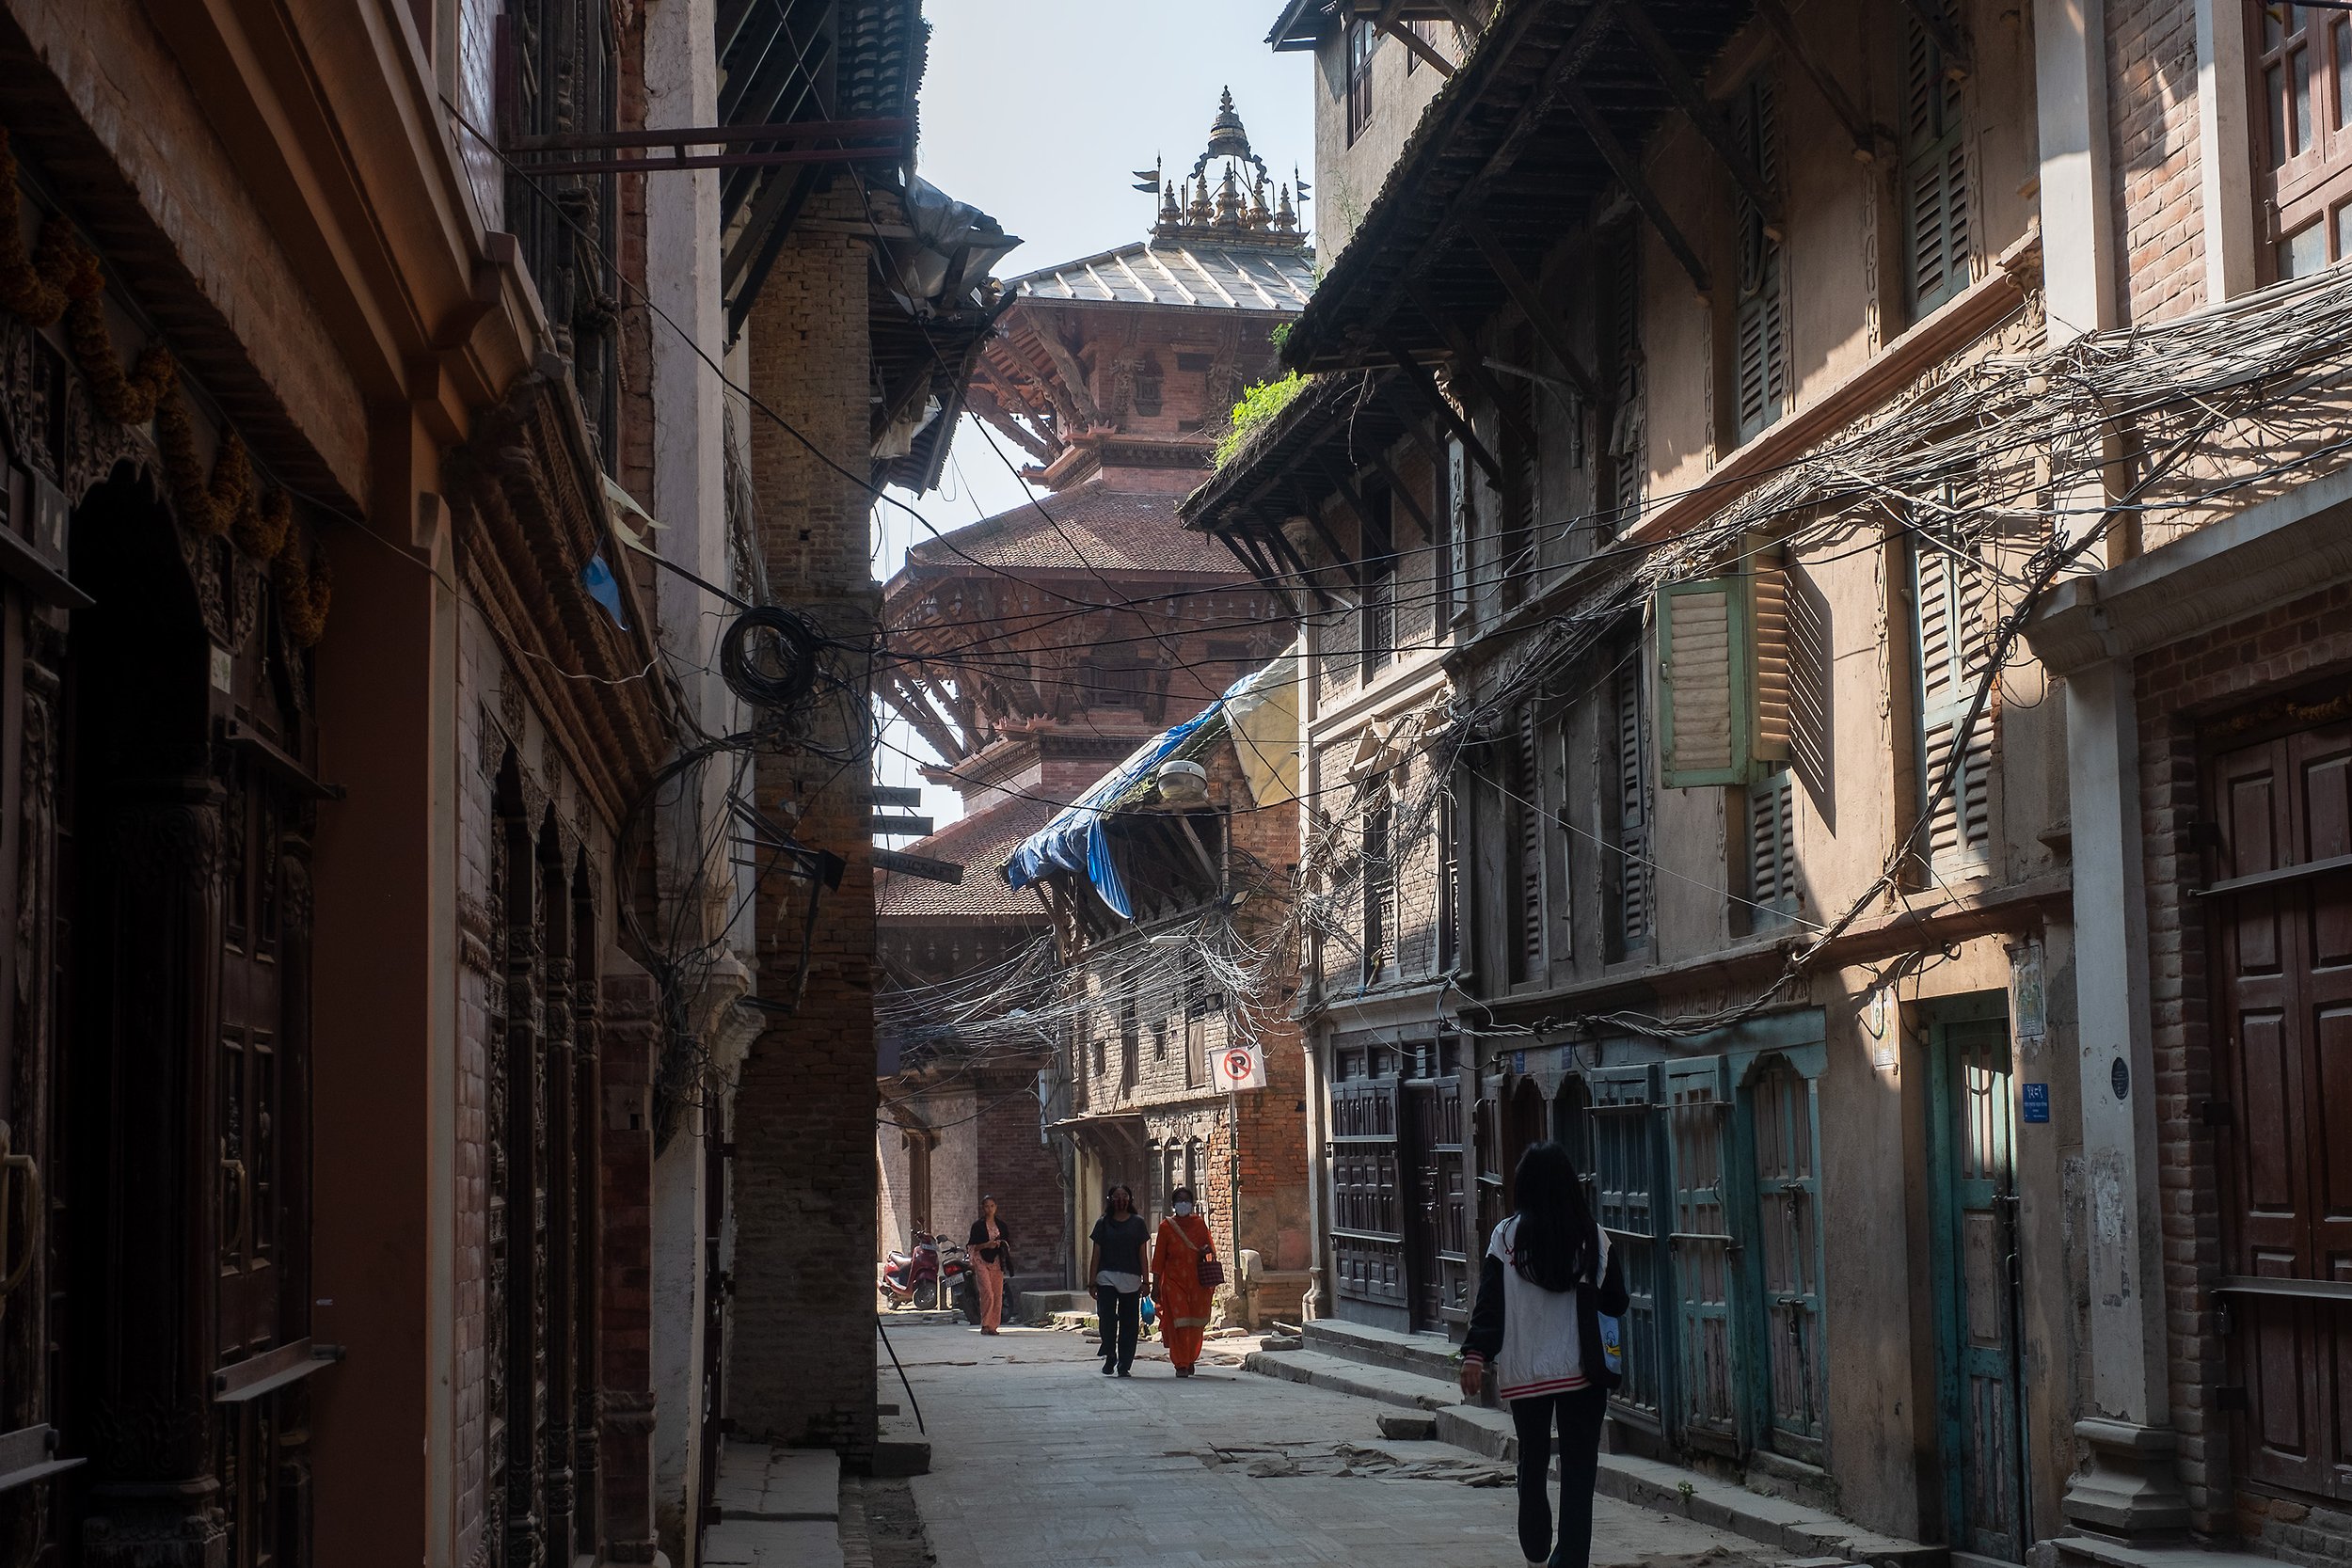  Patan morning streets 